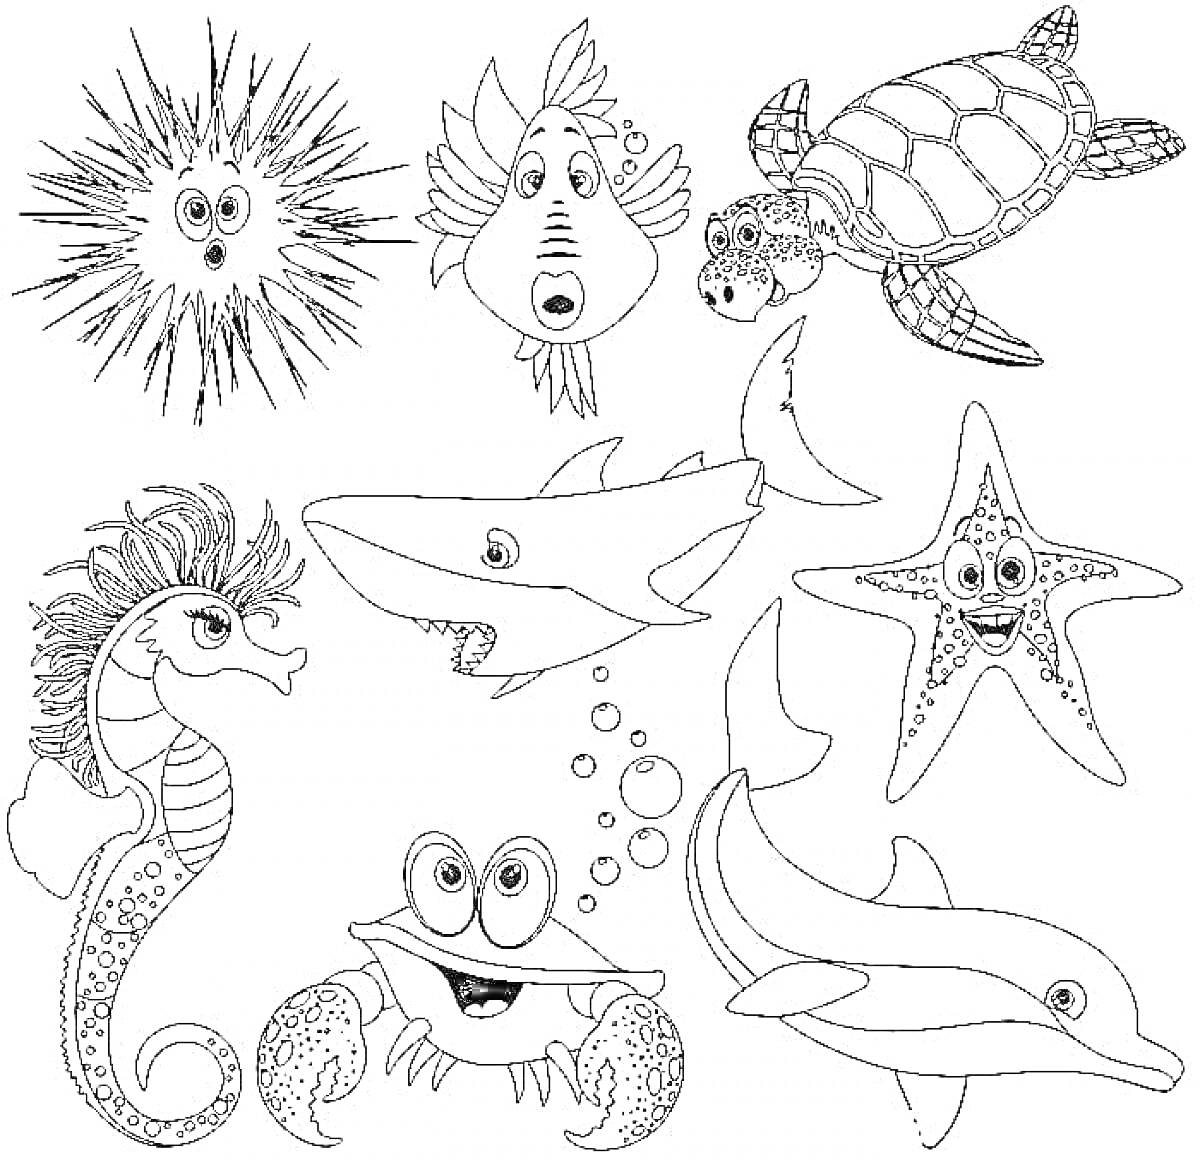 Раскраска Морские животные - морской ёж, рыба-лунь, черепаха, морской конек, акула, морская звезда, краб, дельфин